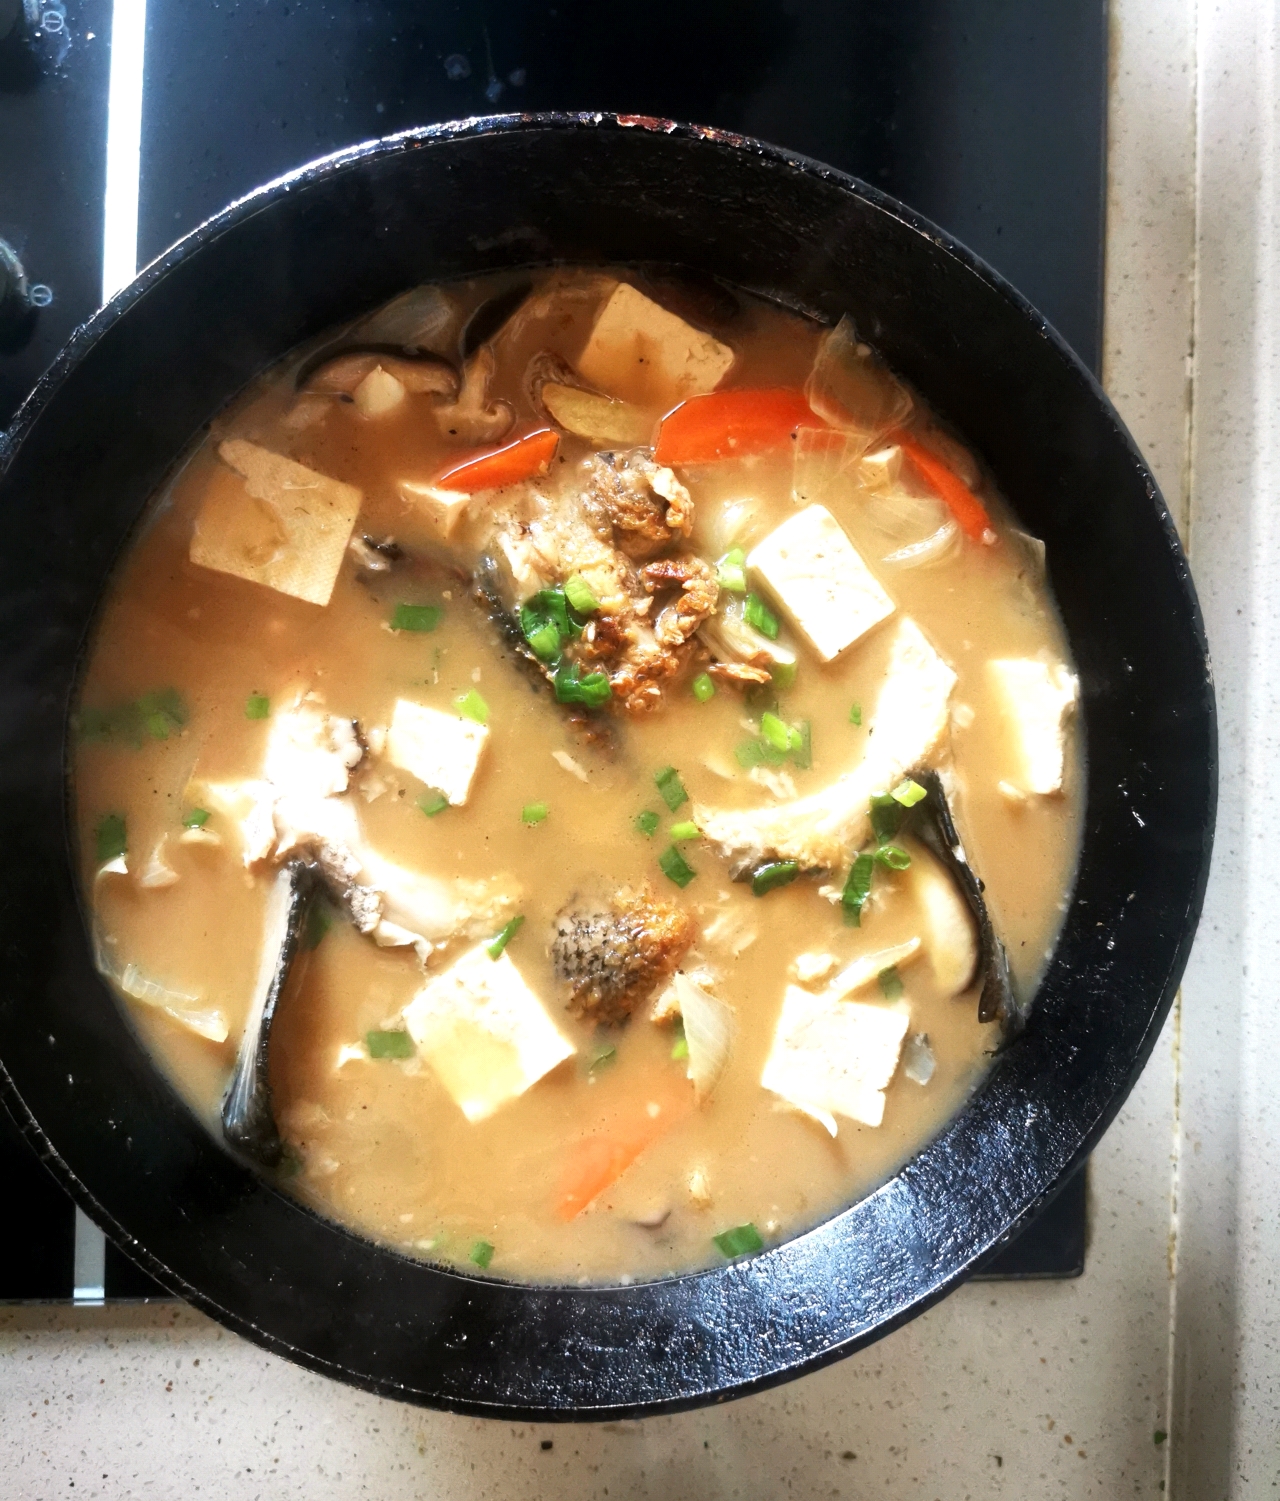 三文鱼头炖豆腐